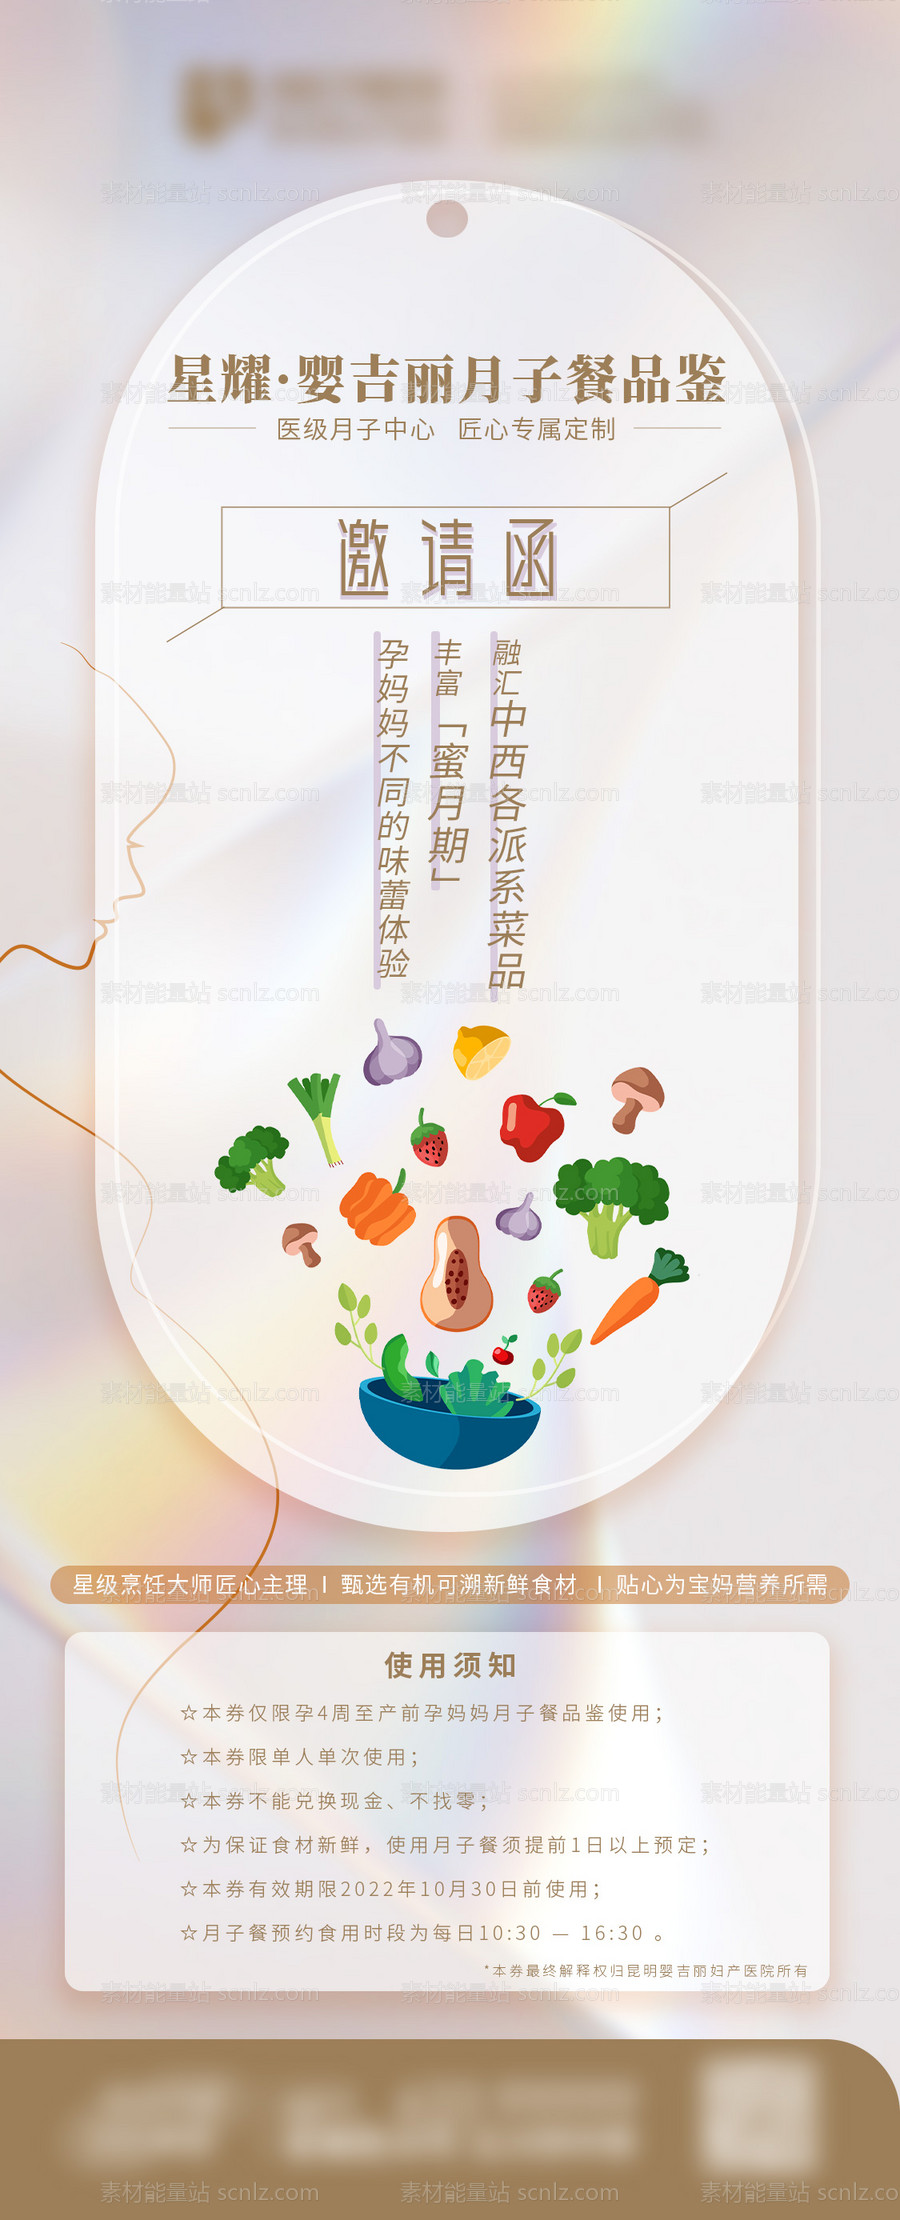 素材能量站-月子餐品鉴邀请函海报